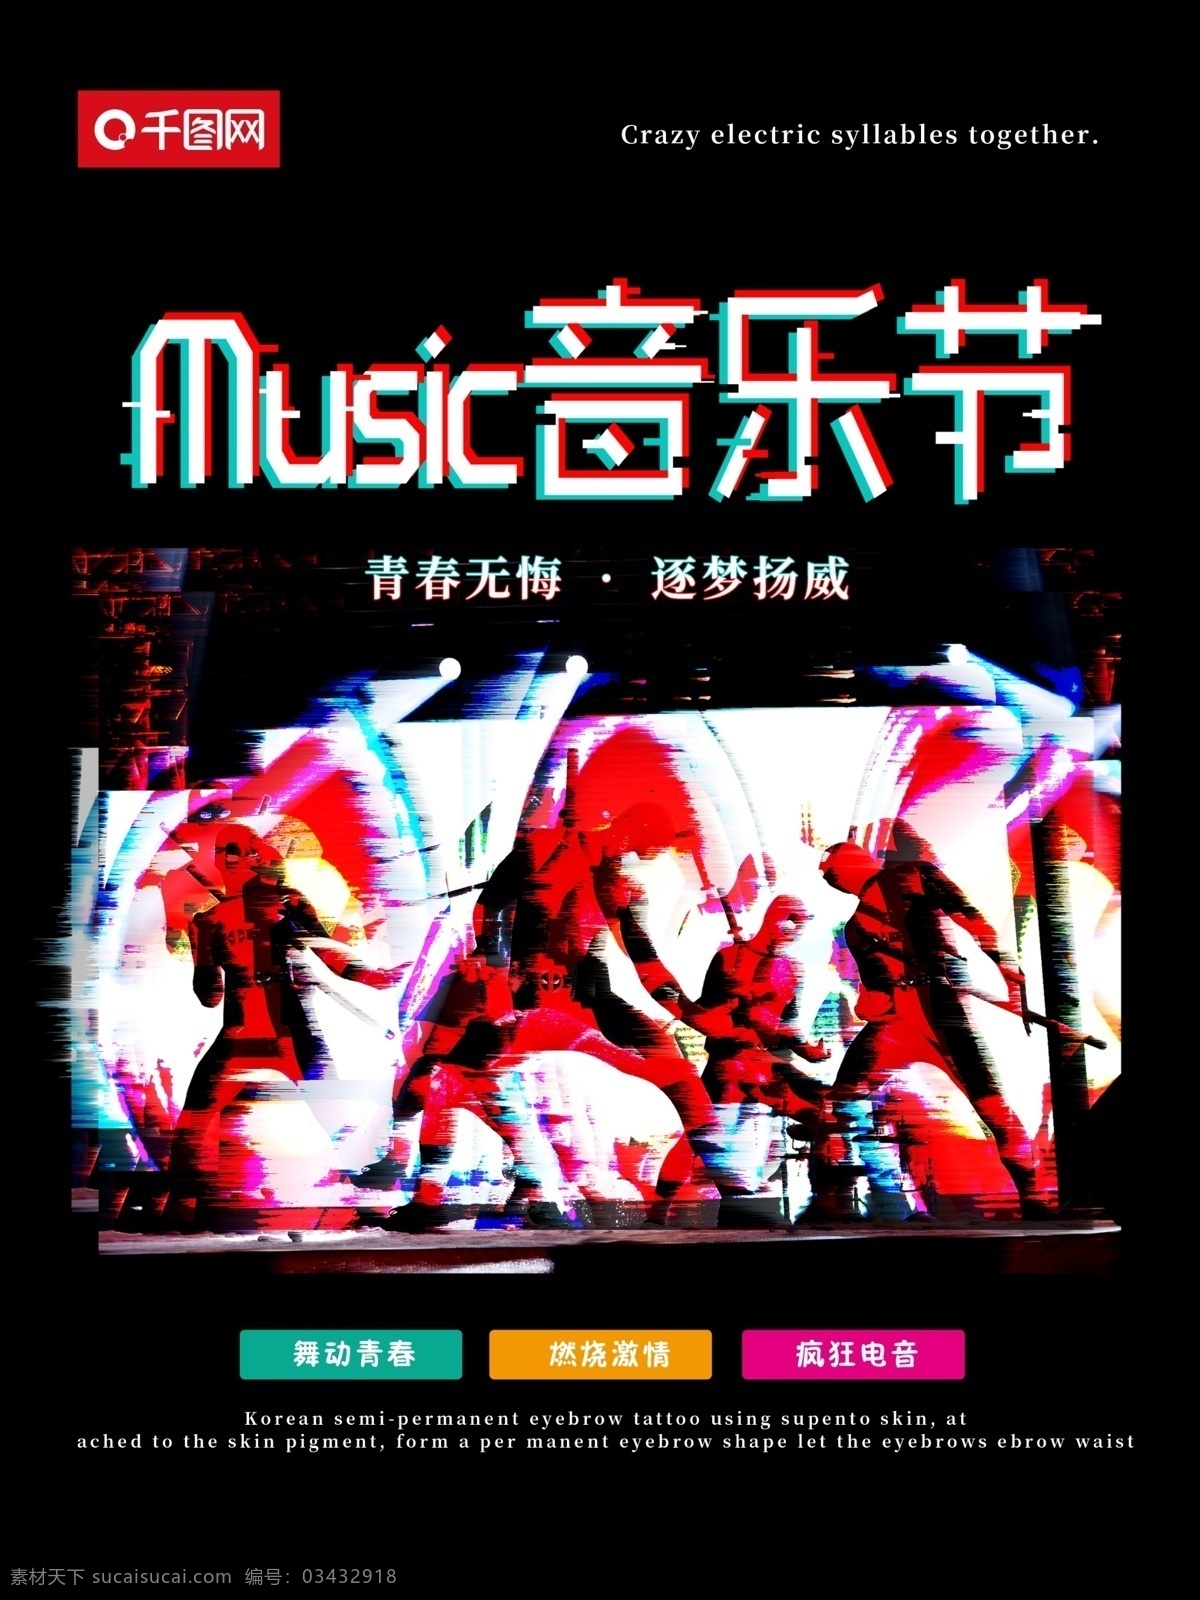 抖 音 故障 风 音乐节 潮 抖音 现代 科技 蹦迪 嗨 dj 音乐 歌曲